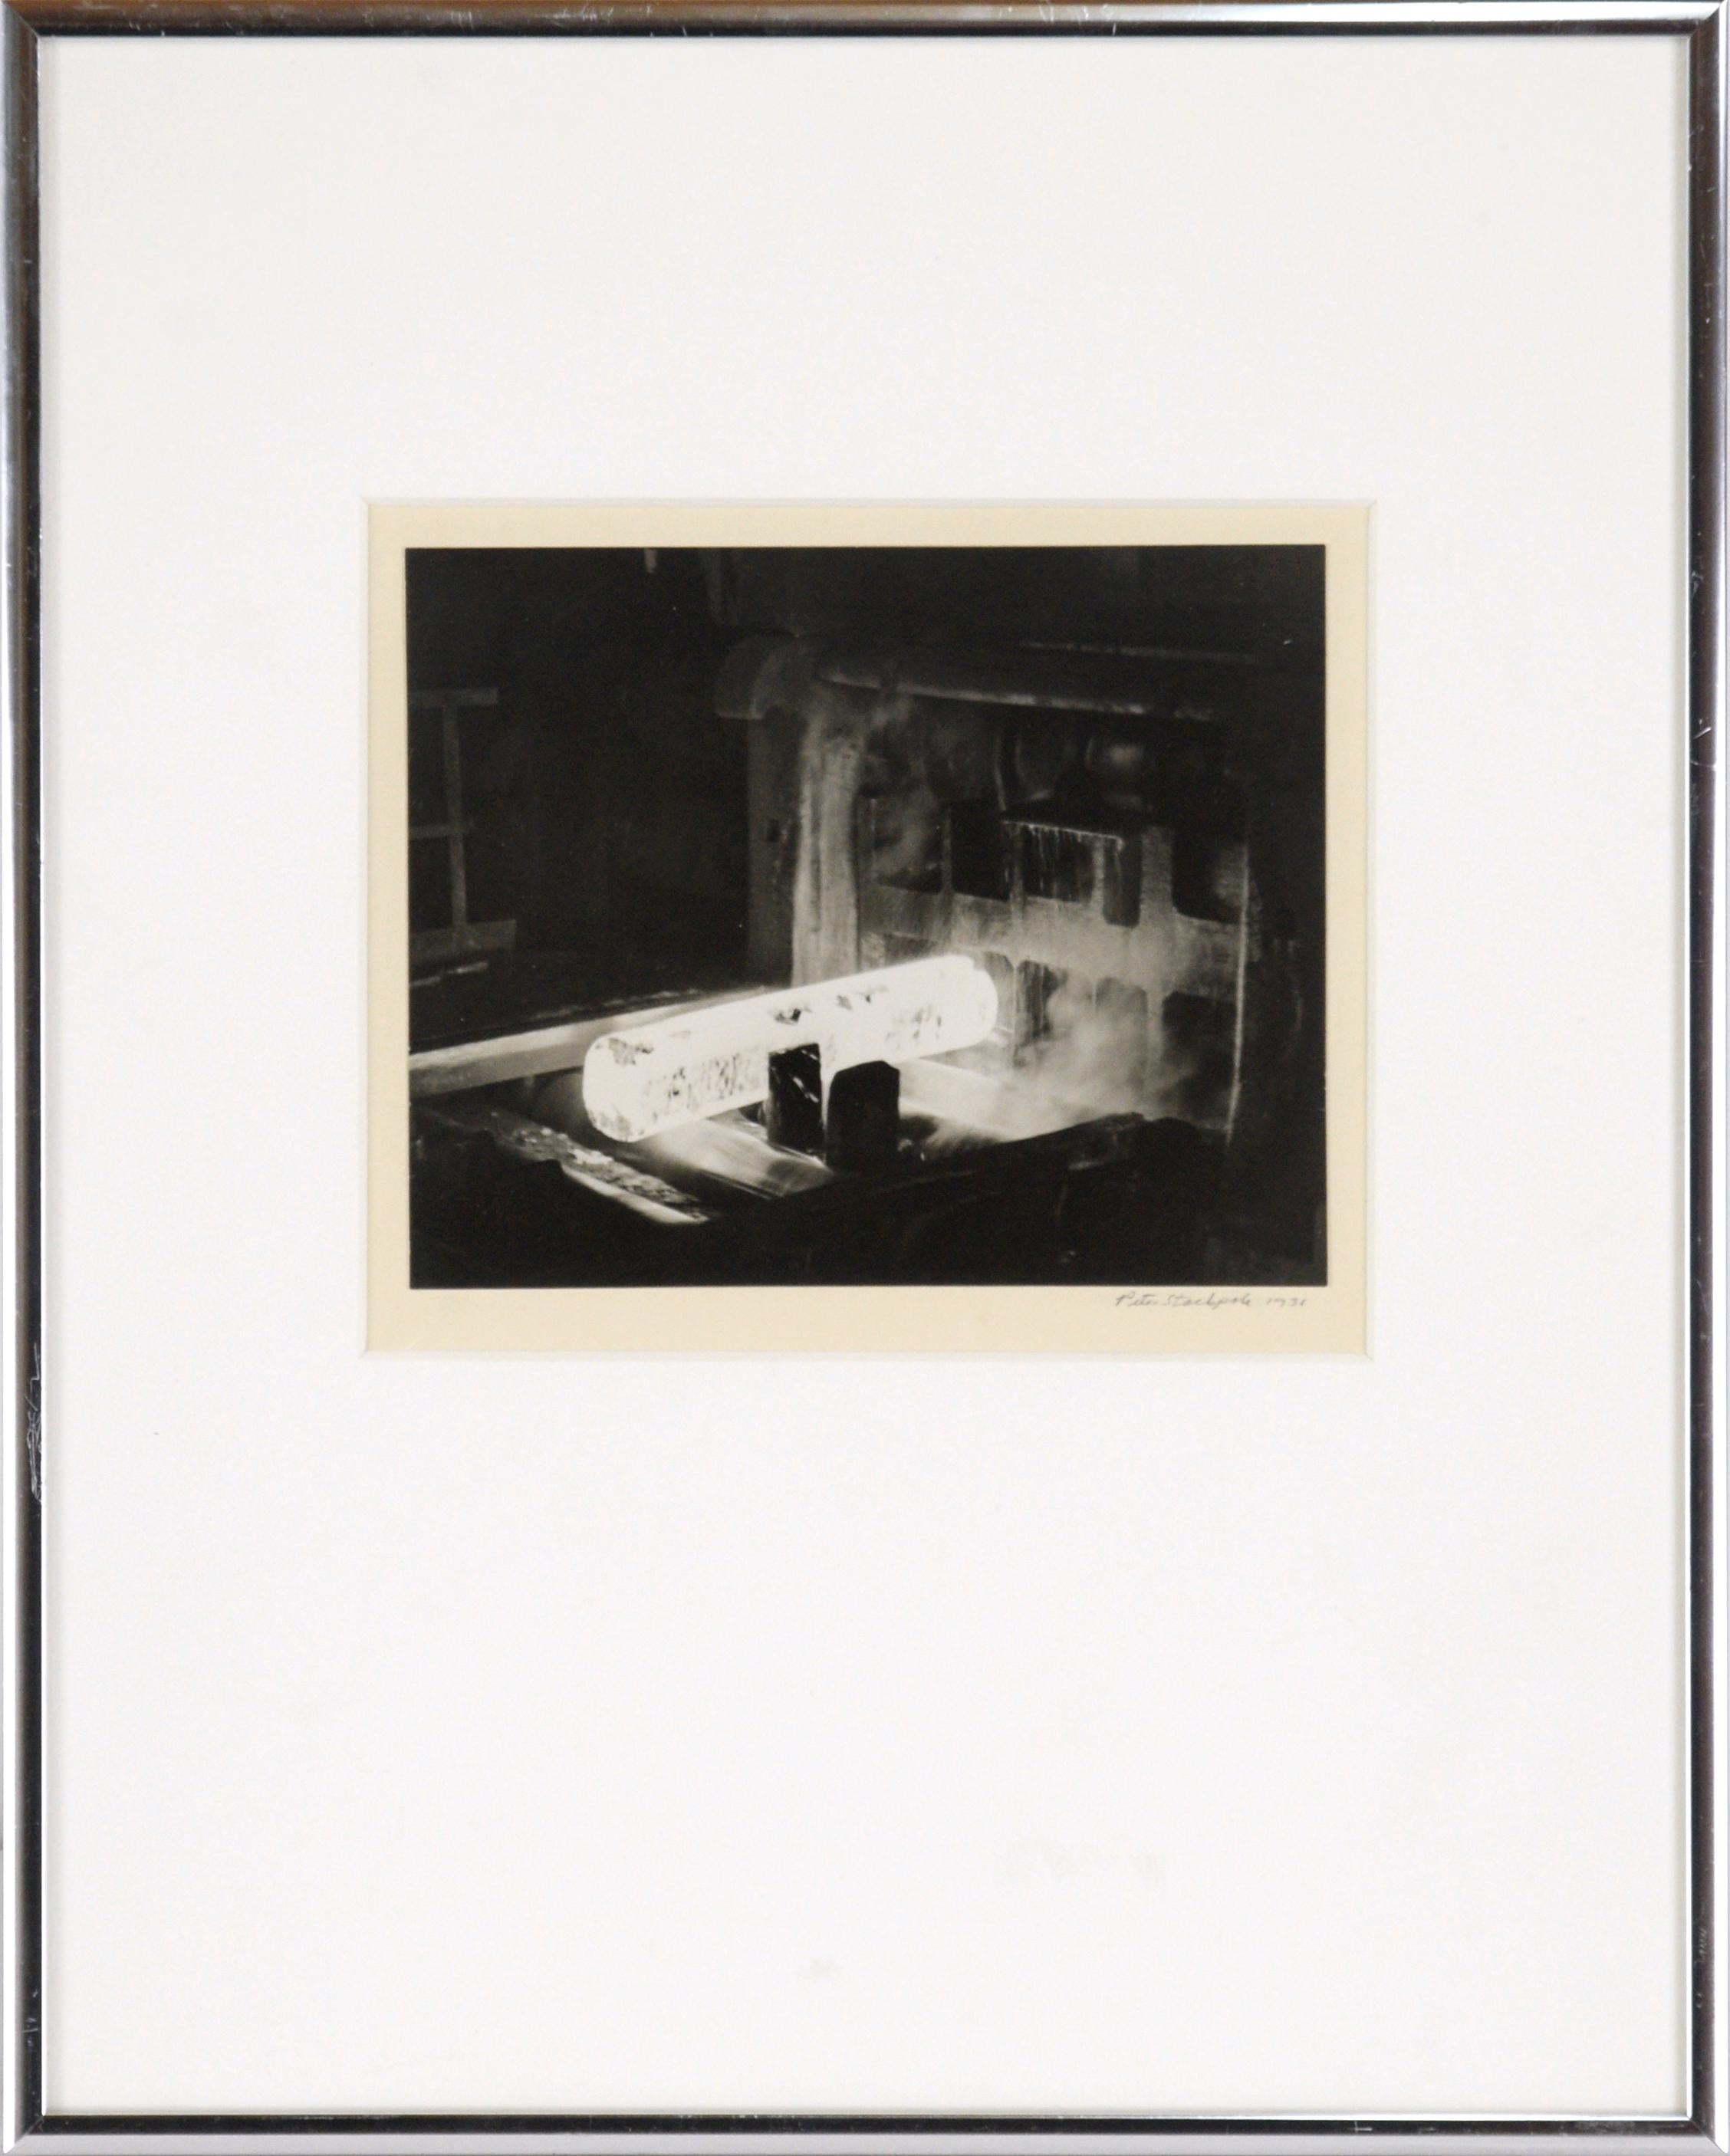 The Foundry - Photographie en noir et blanc